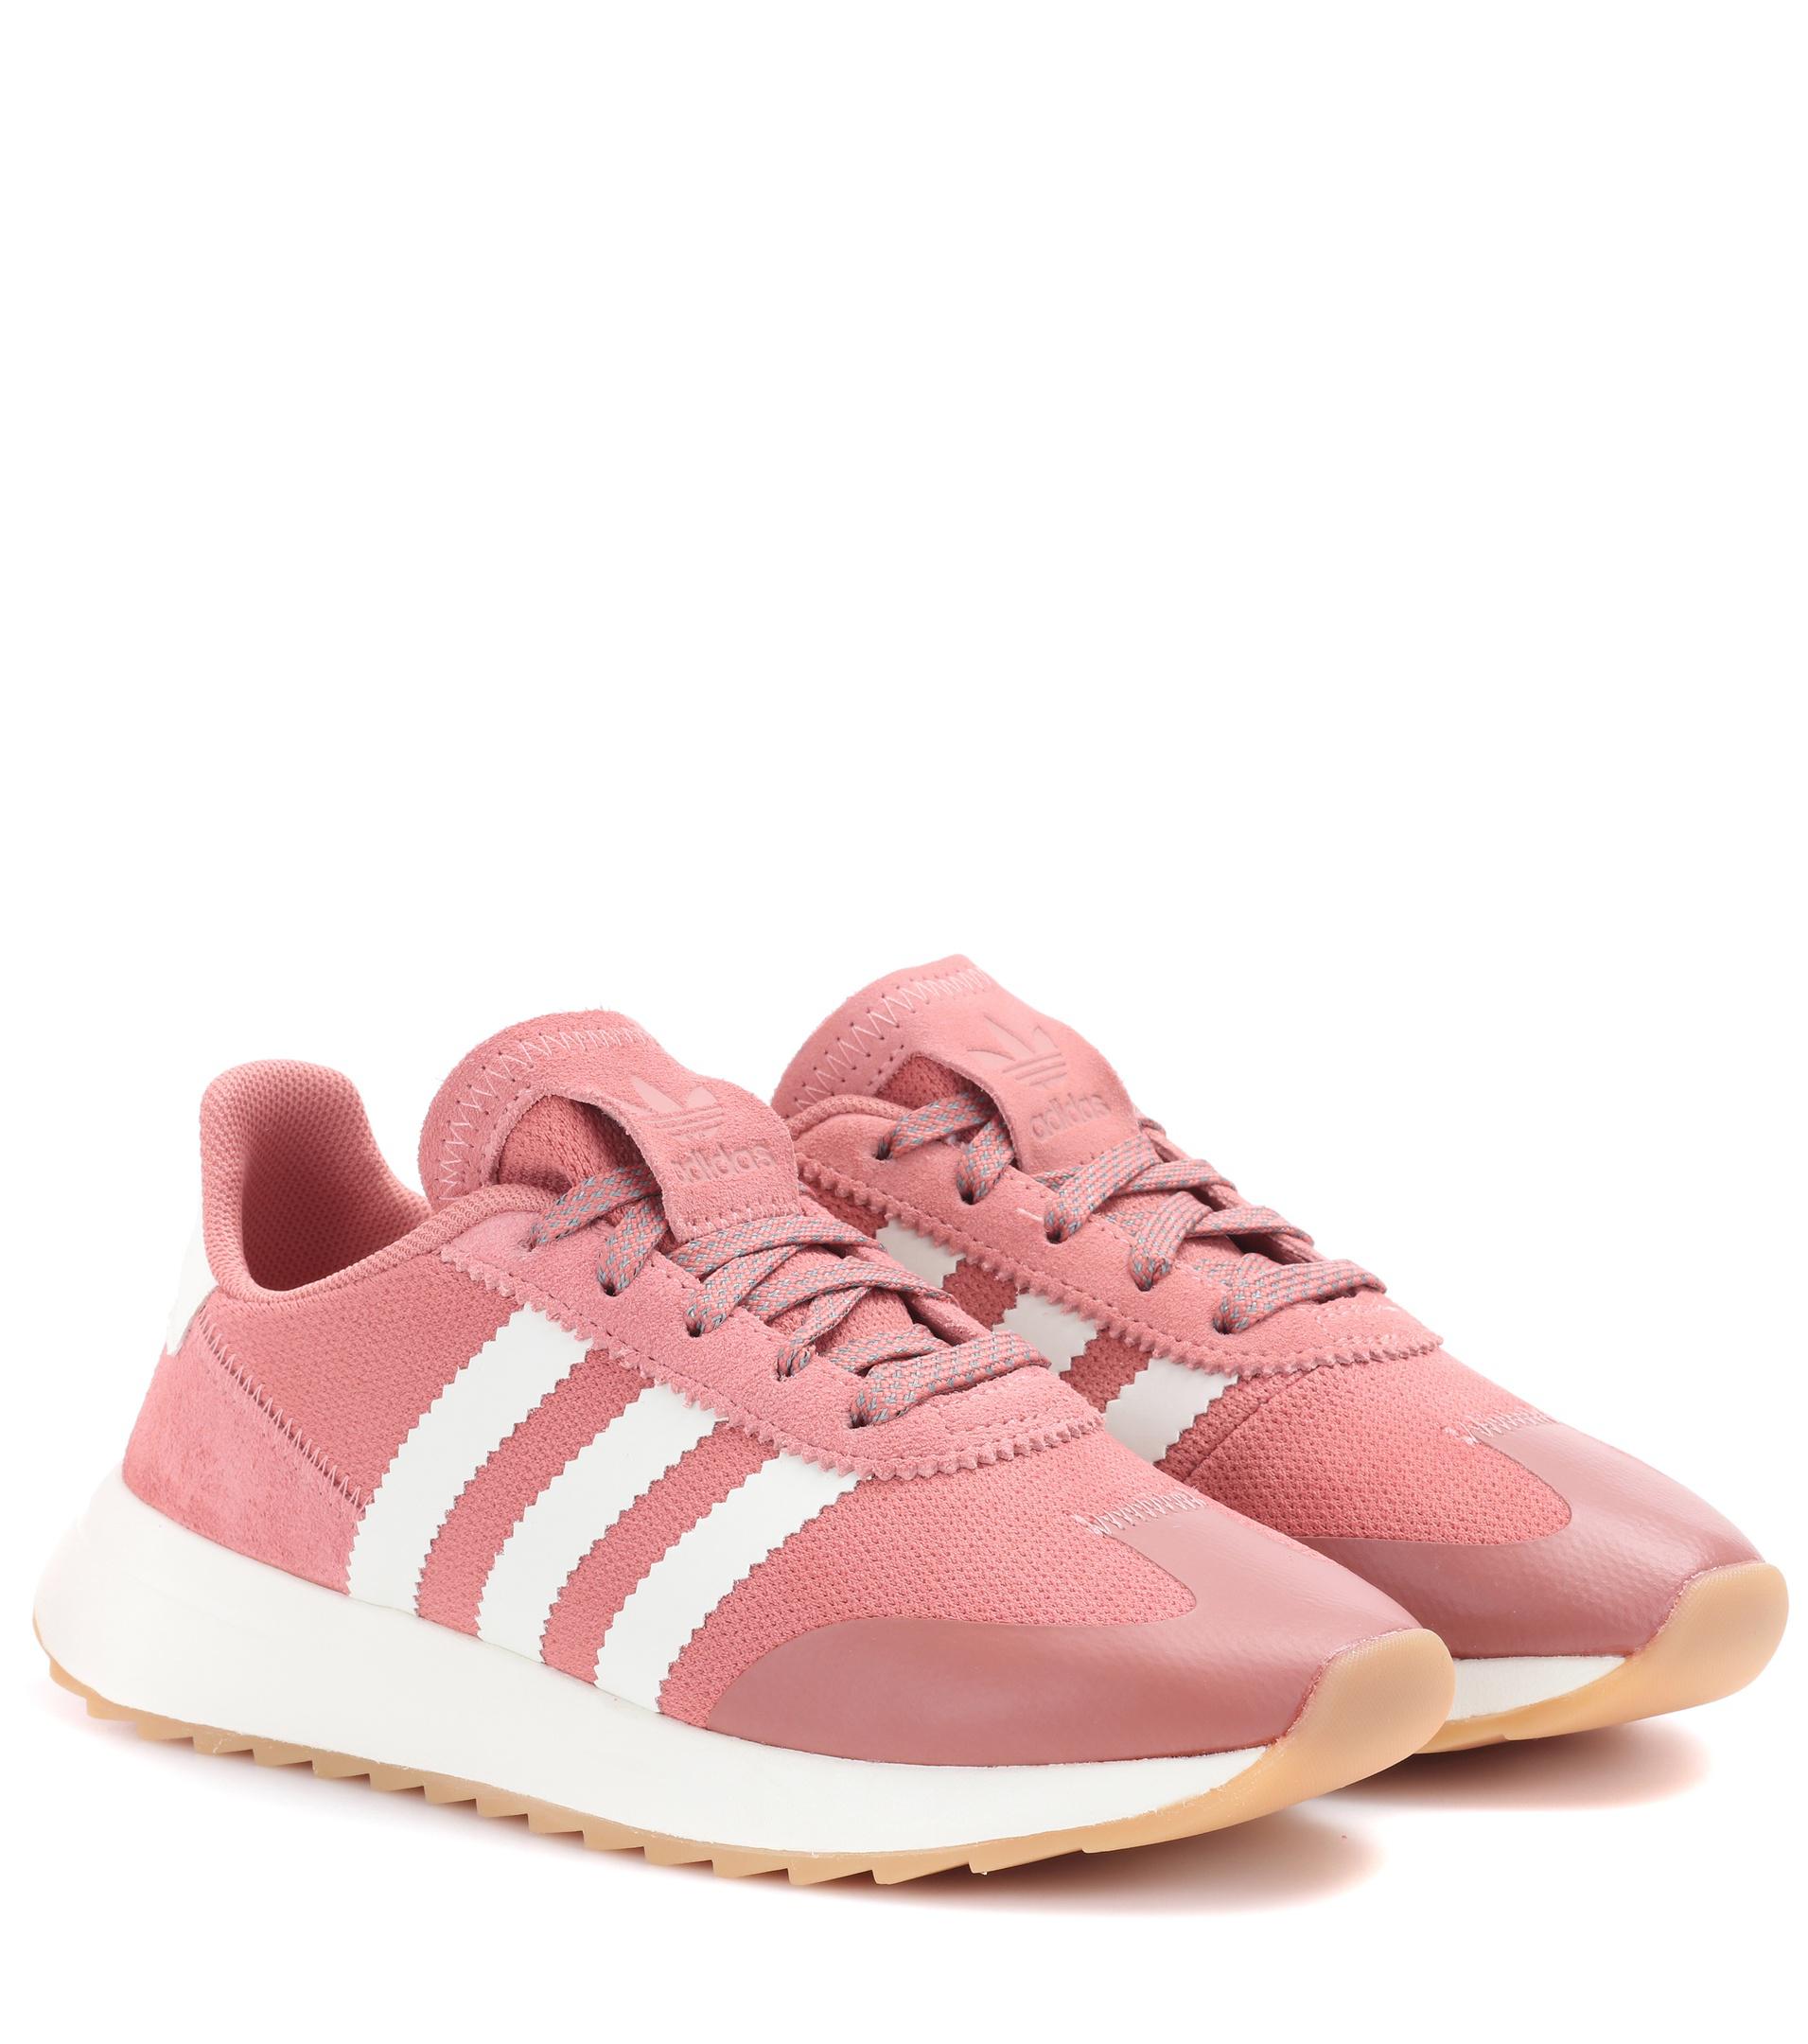 adidas flashback raw pink & white shoes